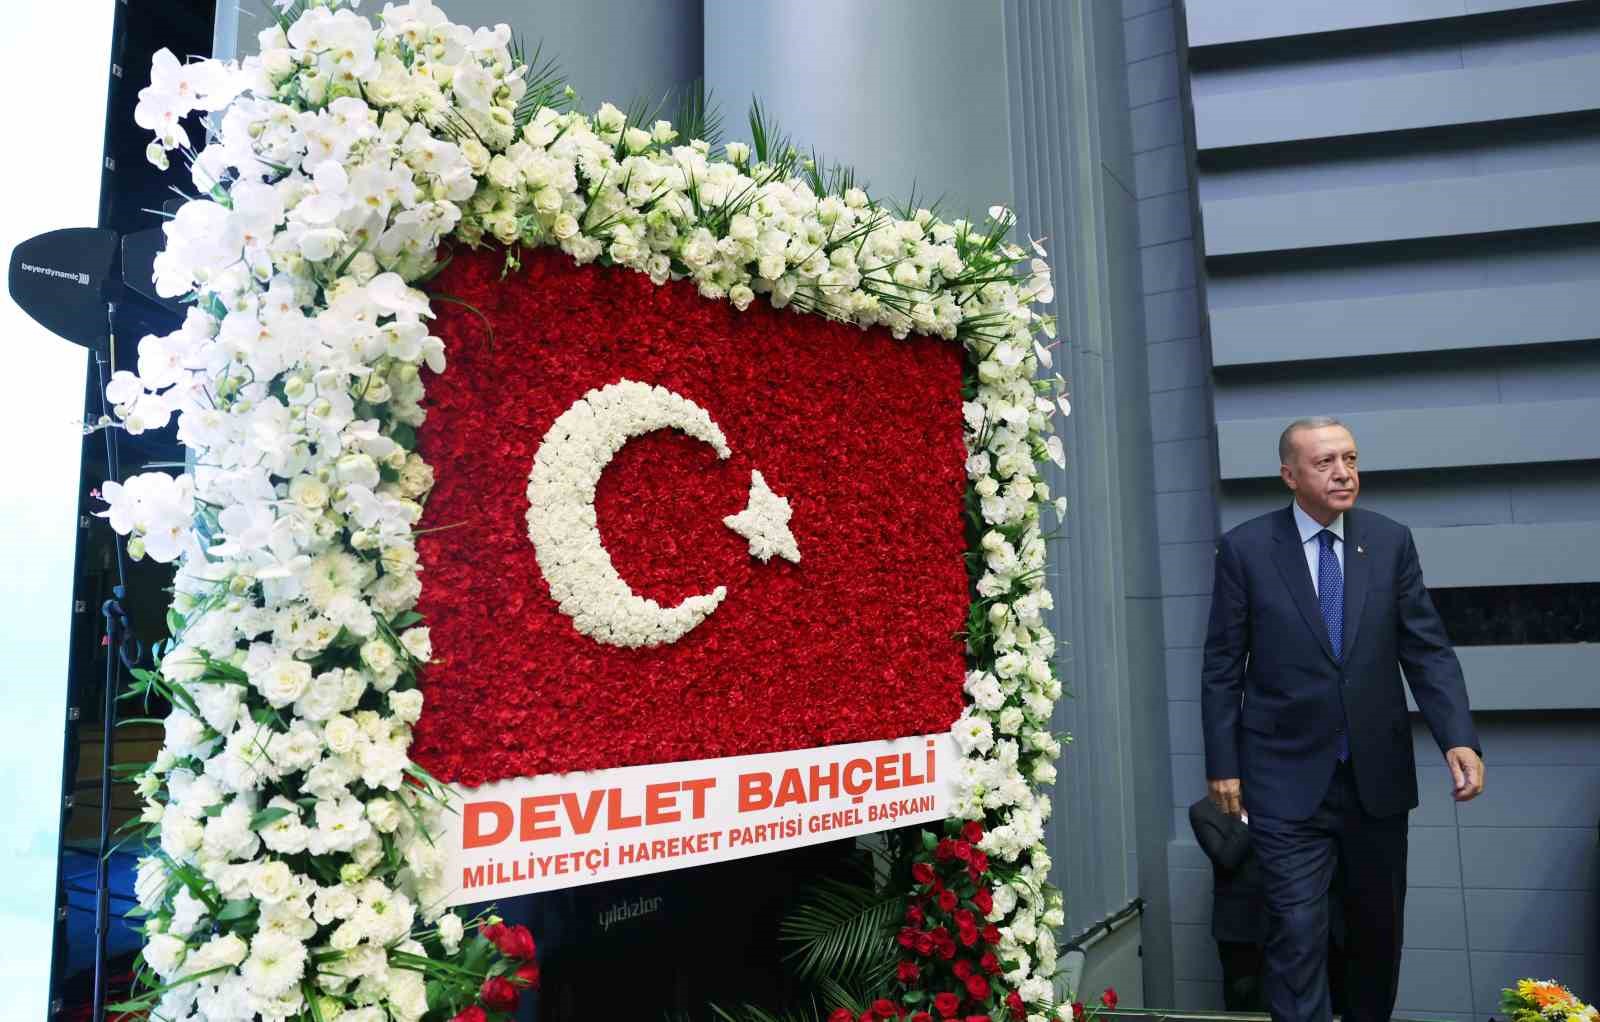 Cumhurbaşkanı Erdoğan: “Türkiye’nin siyaset mühendisliği ürünü kurgulardan kurtulup, yerli ve milli eksende siyaset yapan bir muhalefete kavuşması en büyük dileğimizdir"